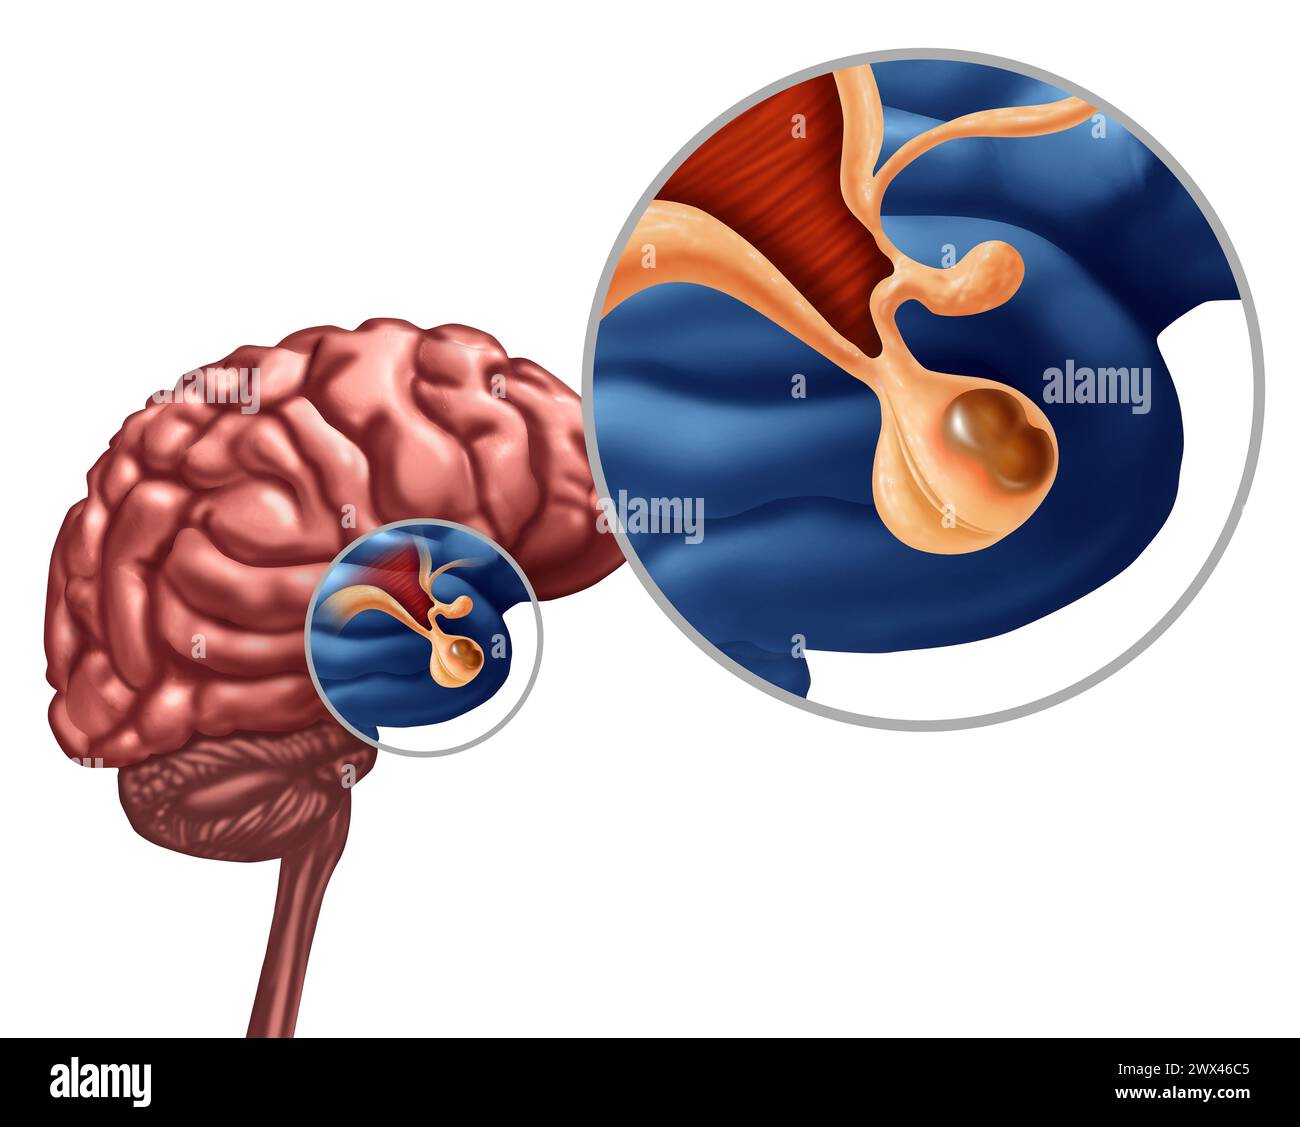 Hypophysenadenom benigner Tumor als nicht-kanzeröse Wachstumsdiagnostik am Drüsen- oder Hypothalamus oder Hypophyse cerebri-Konzept im Rahmen des menschlichen anat Stockfoto